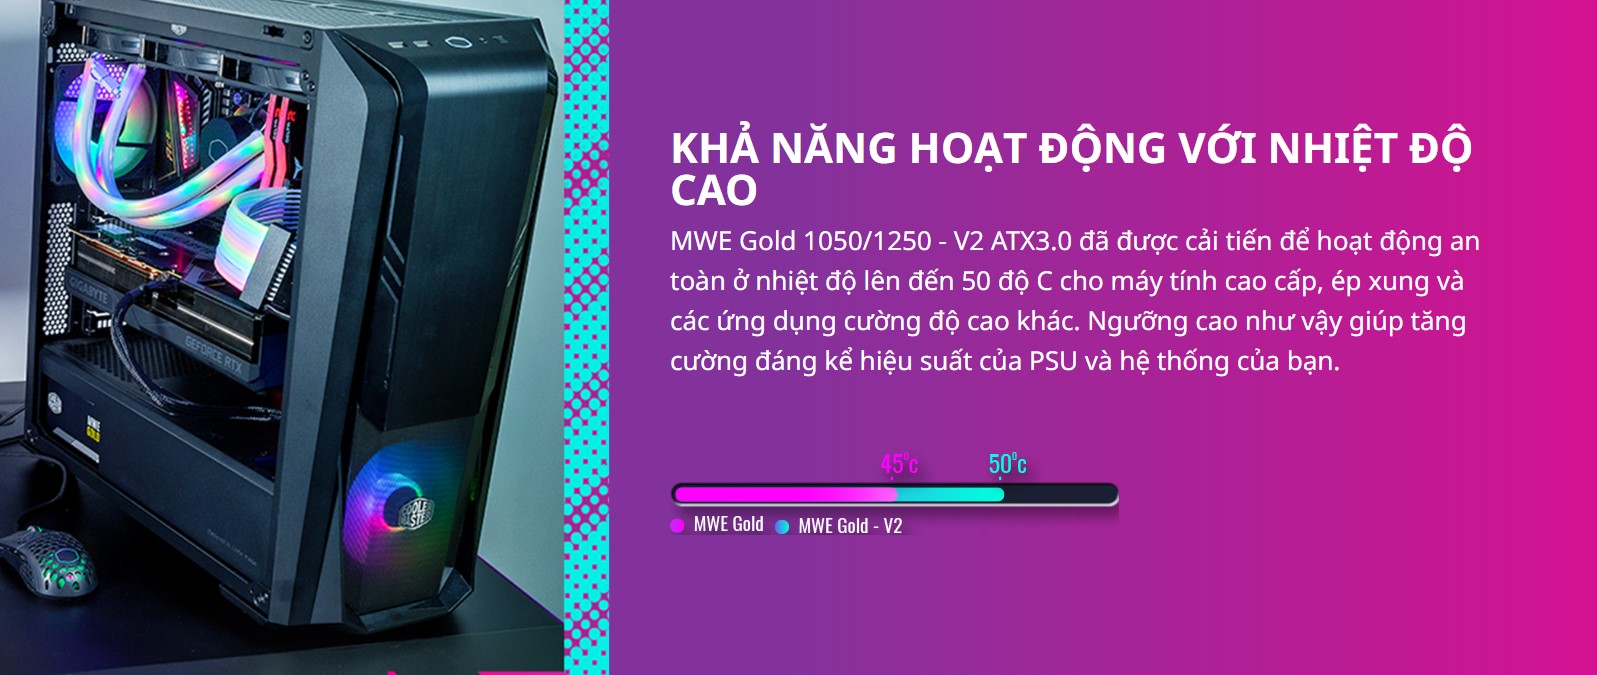 MWE Gold 1050/1250 - V2 ATX3.0 đã được cải tiến để hoạt động an toàn ở nhiệt độ lên đến 50 độ C cho máy tính cao cấp, ép xung và các ứng dụng cường độ cao khác. Ngưỡng cao như vậy giúp tăng cường đáng kể hiệu suất của PSU và hệ thống của bạn.